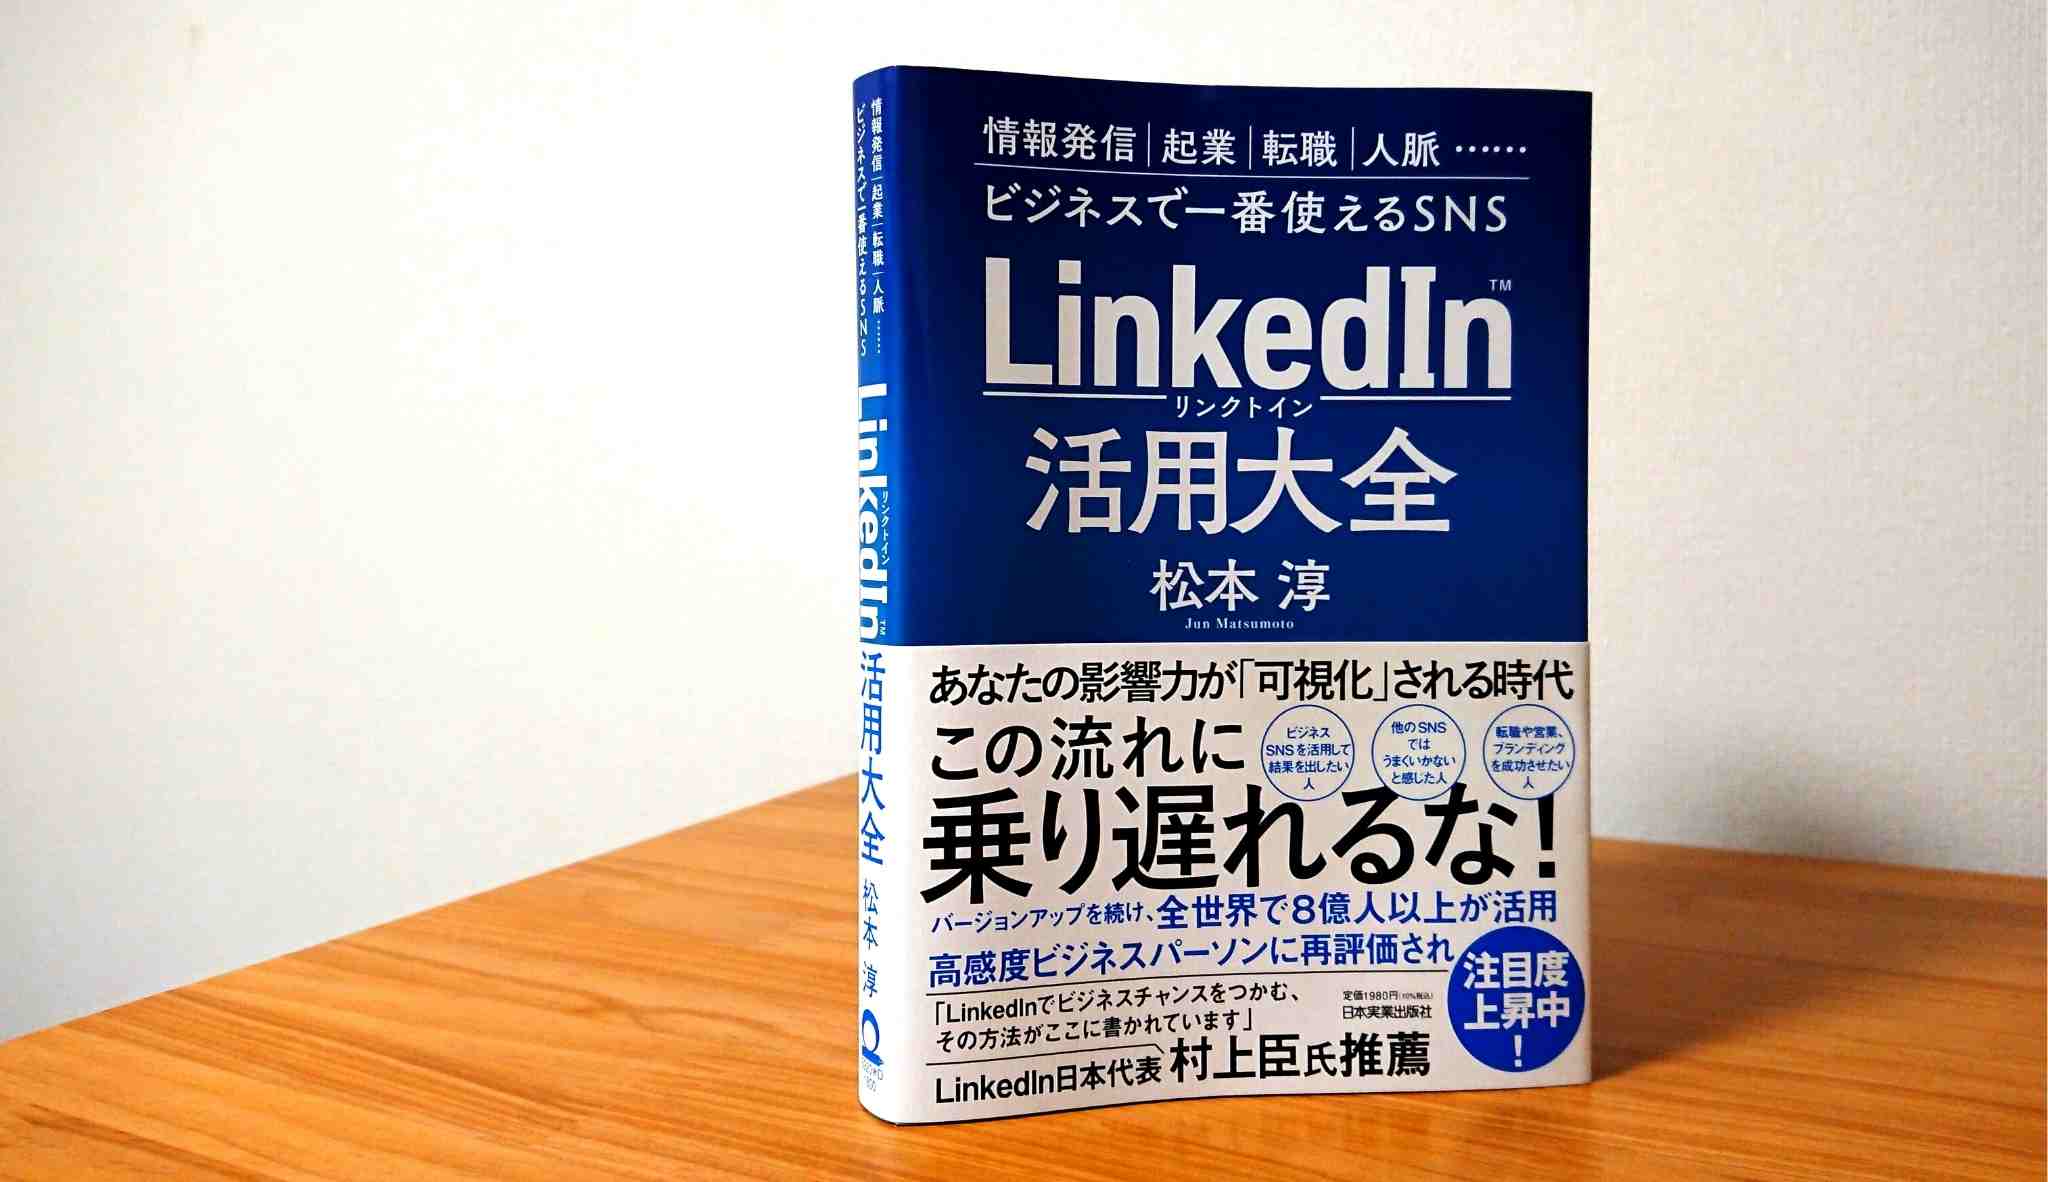 新商品!新型 LinkedInをビジネスに使う本 = HOW TO USE LINKEDIN